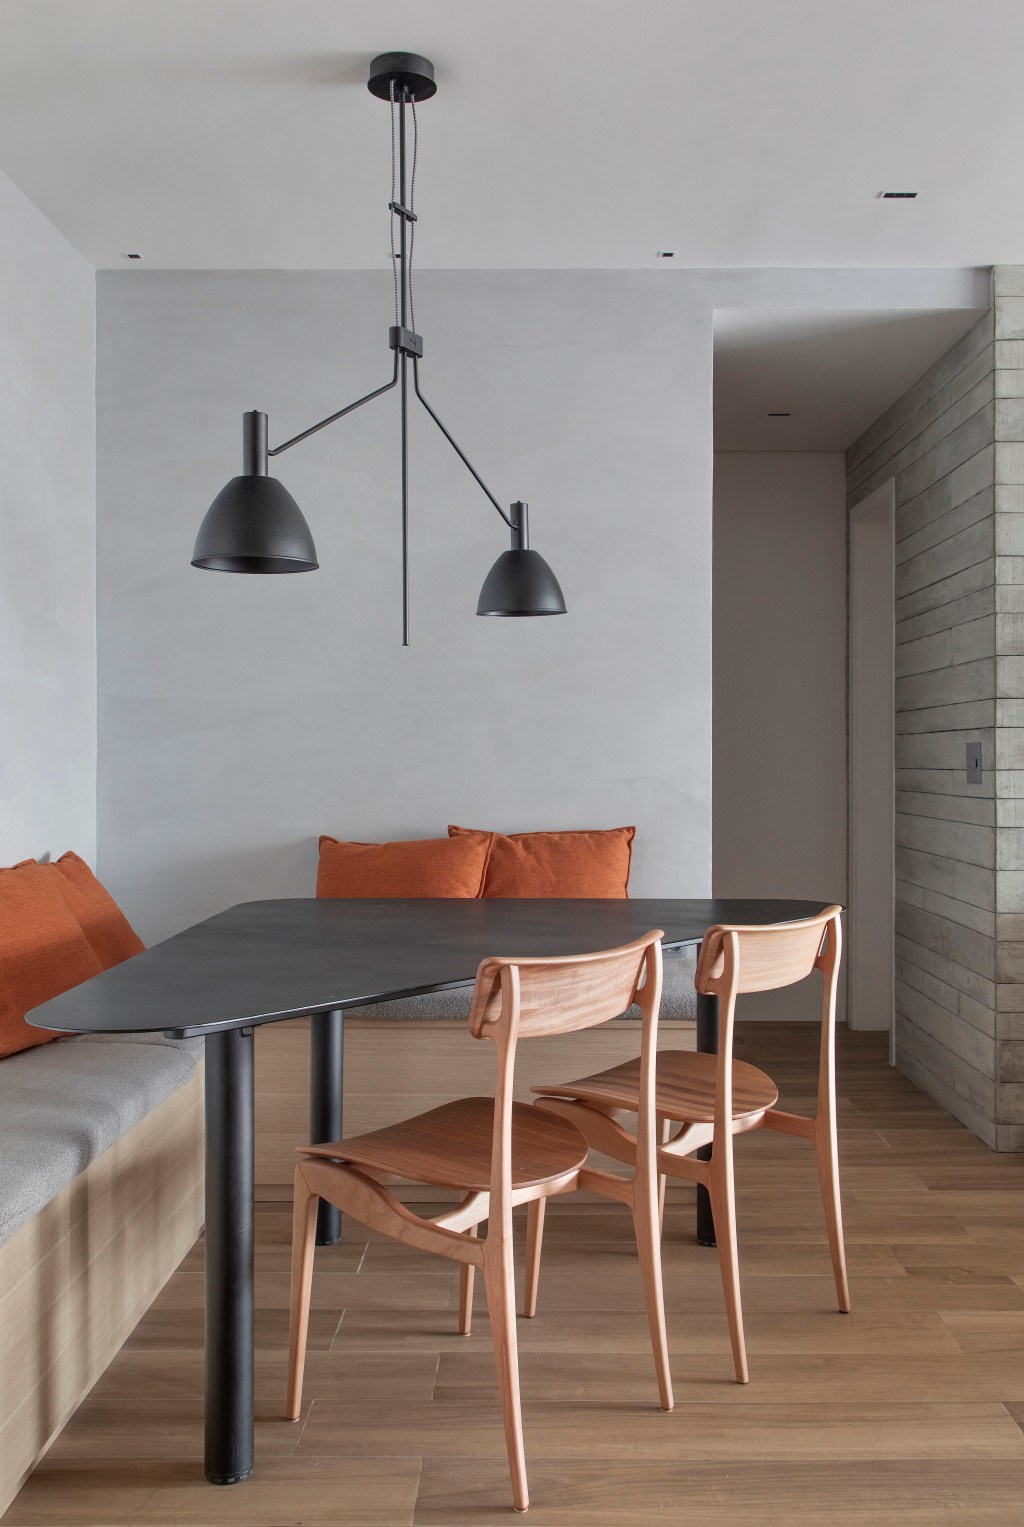 Preto e terracota marcam o décor deste apartamento masculino de 110 m². Projeto de Up3 Arquitetura. Na foto, sala de jantar com mesa triangular e canto alemão.